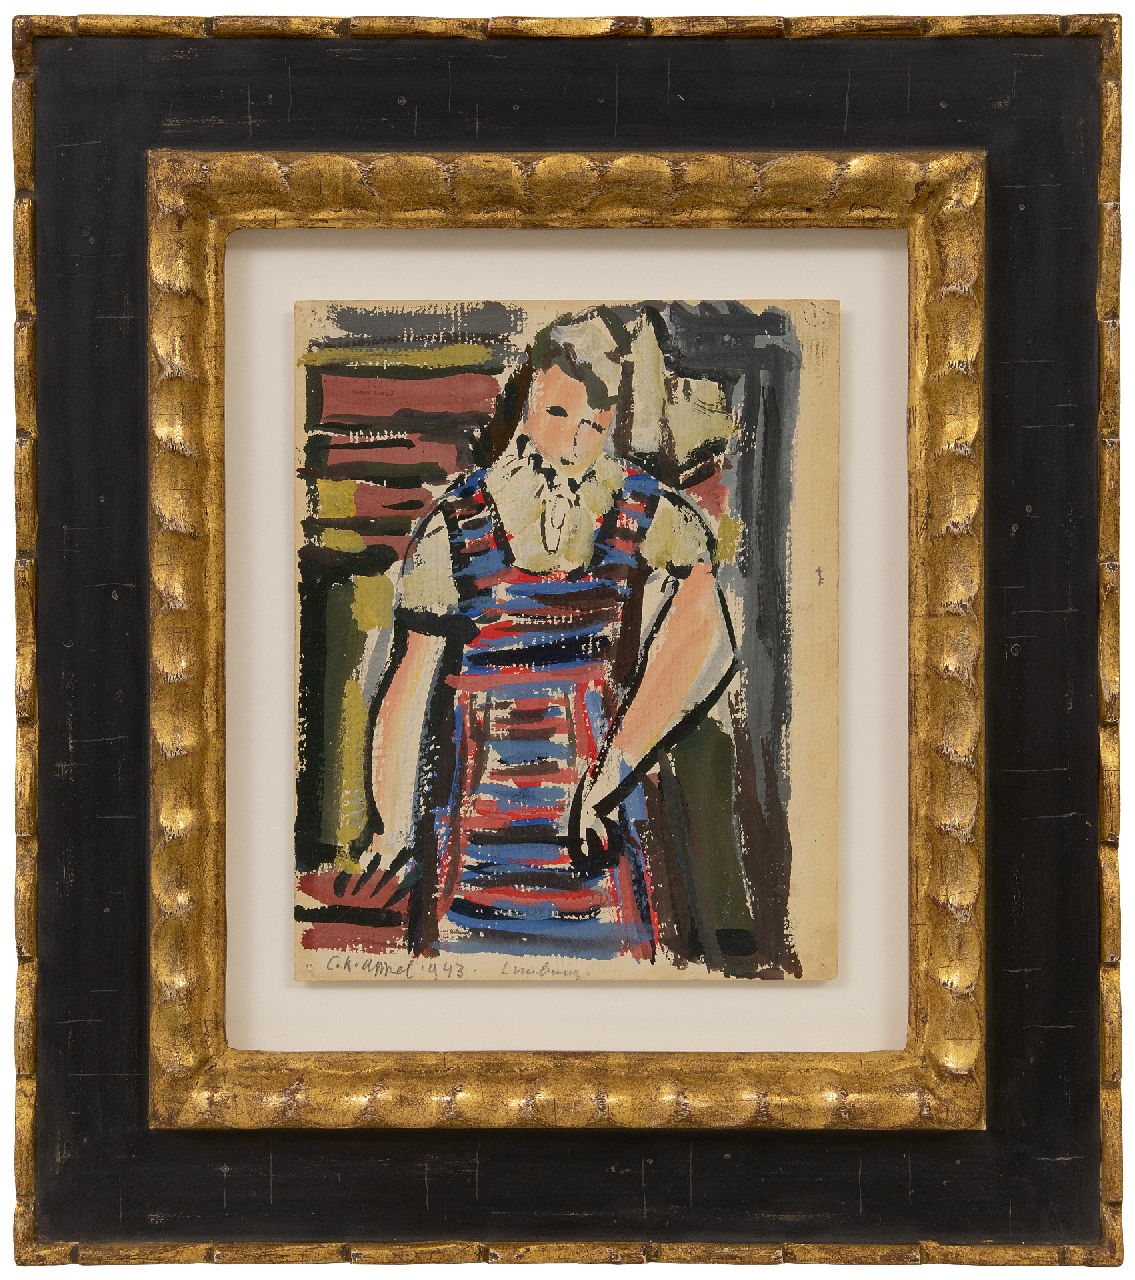 Appel C.K.  | Christiaan 'Karel' Appel | Aquarellen en tekeningen te koop aangeboden | Jonge vrouw in gestreepte jurk, gouache op papier 24,8 x 19,9 cm, gesigneerd linksonder en gedateerd 1943